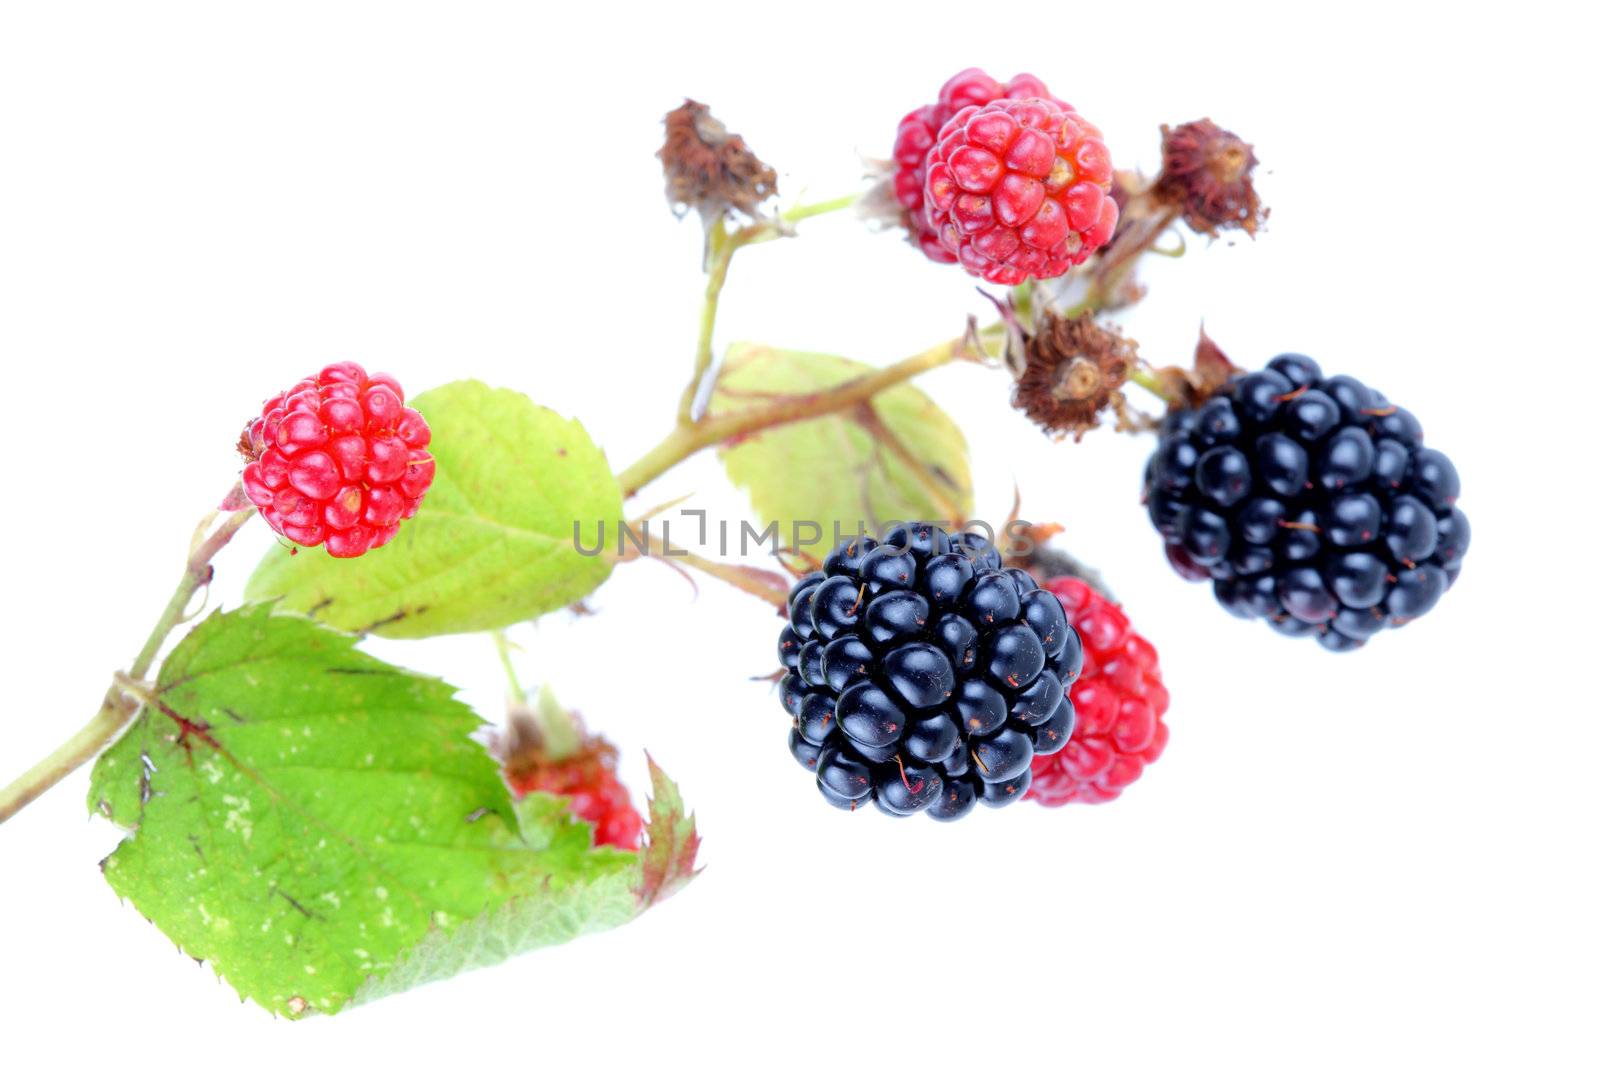 blackberries by kokimk